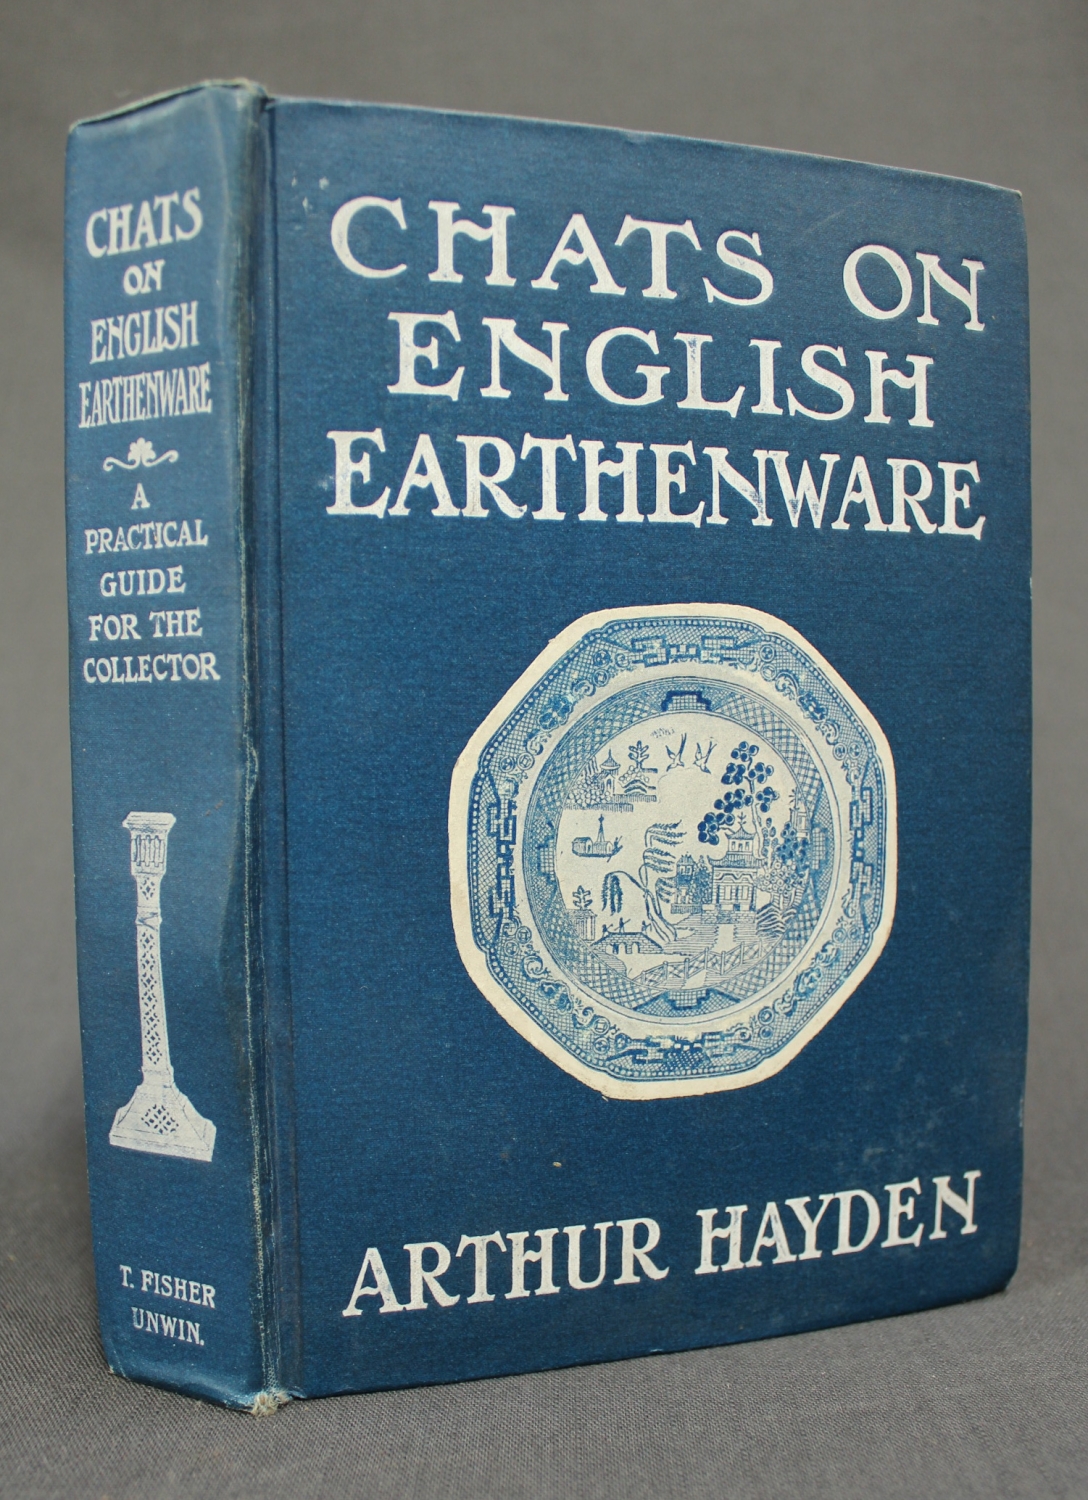 Arthur Hayden